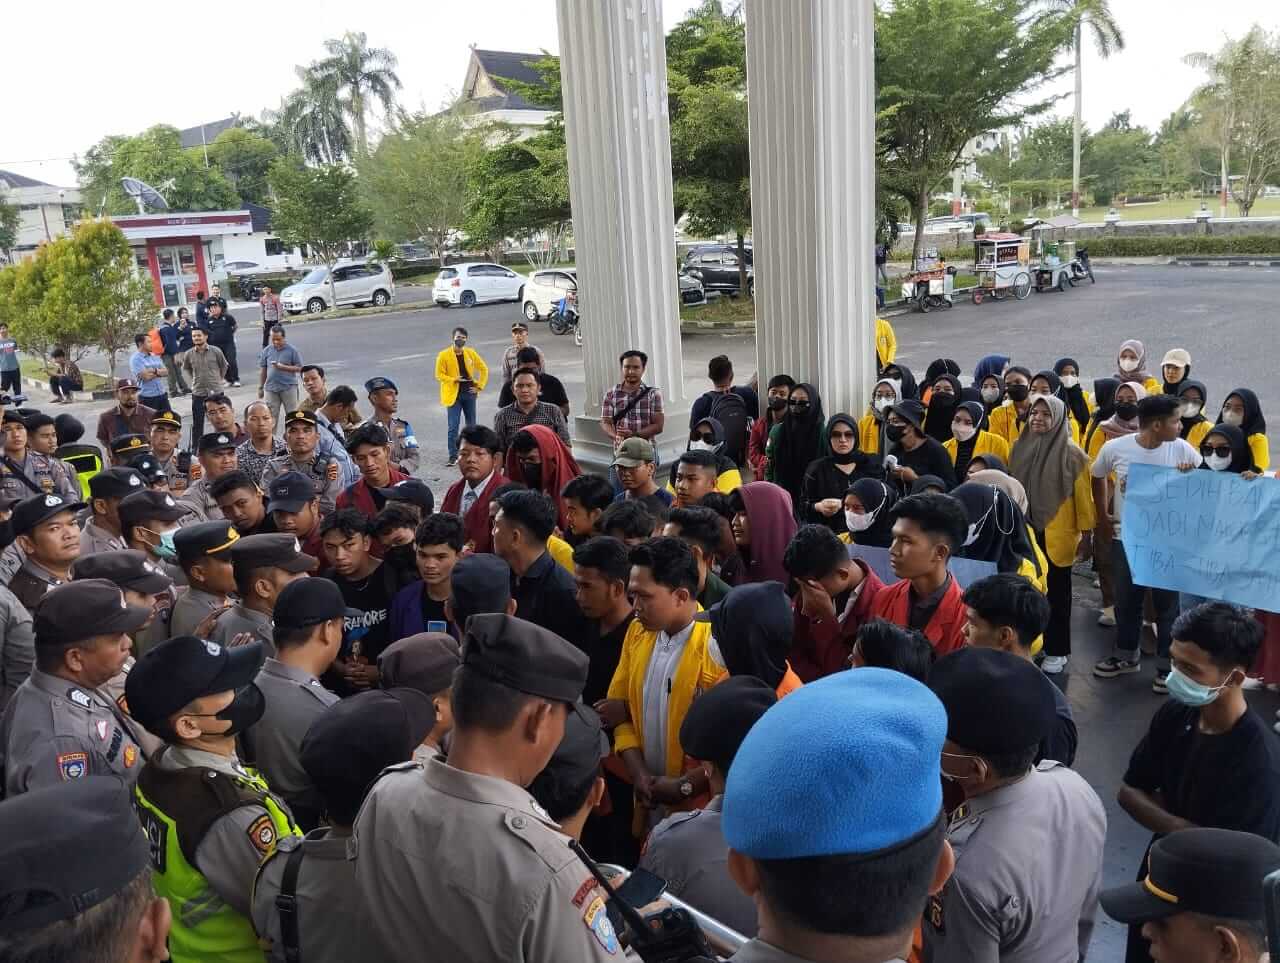 BREAKING NEWS : Demo UU Kesehatan di DPRD Provinsi Jambi, Mahasiswa dan Polisi Saling Dorong